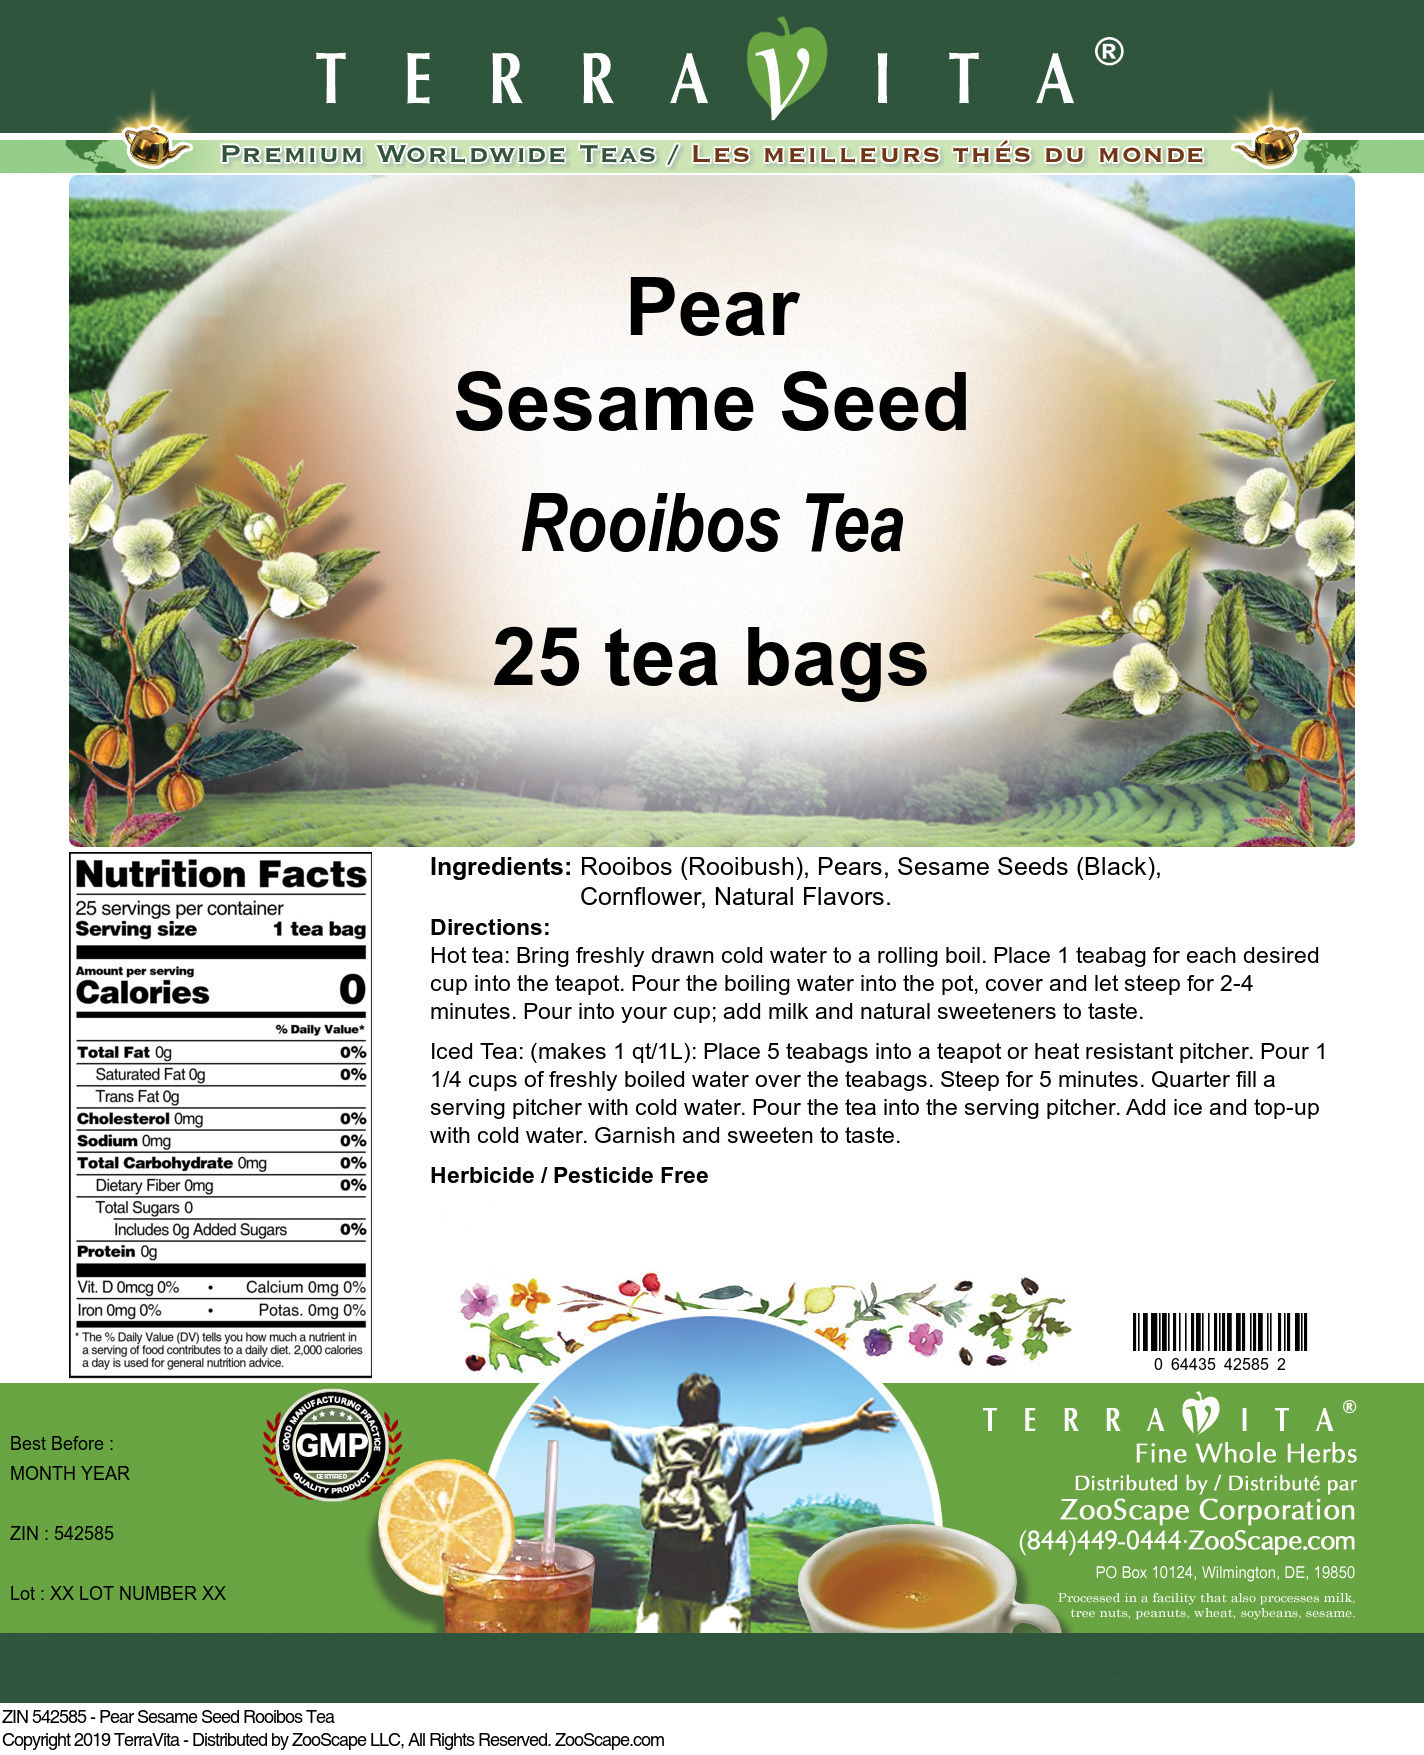 Pear Sesame Seed Rooibos Tea - Label